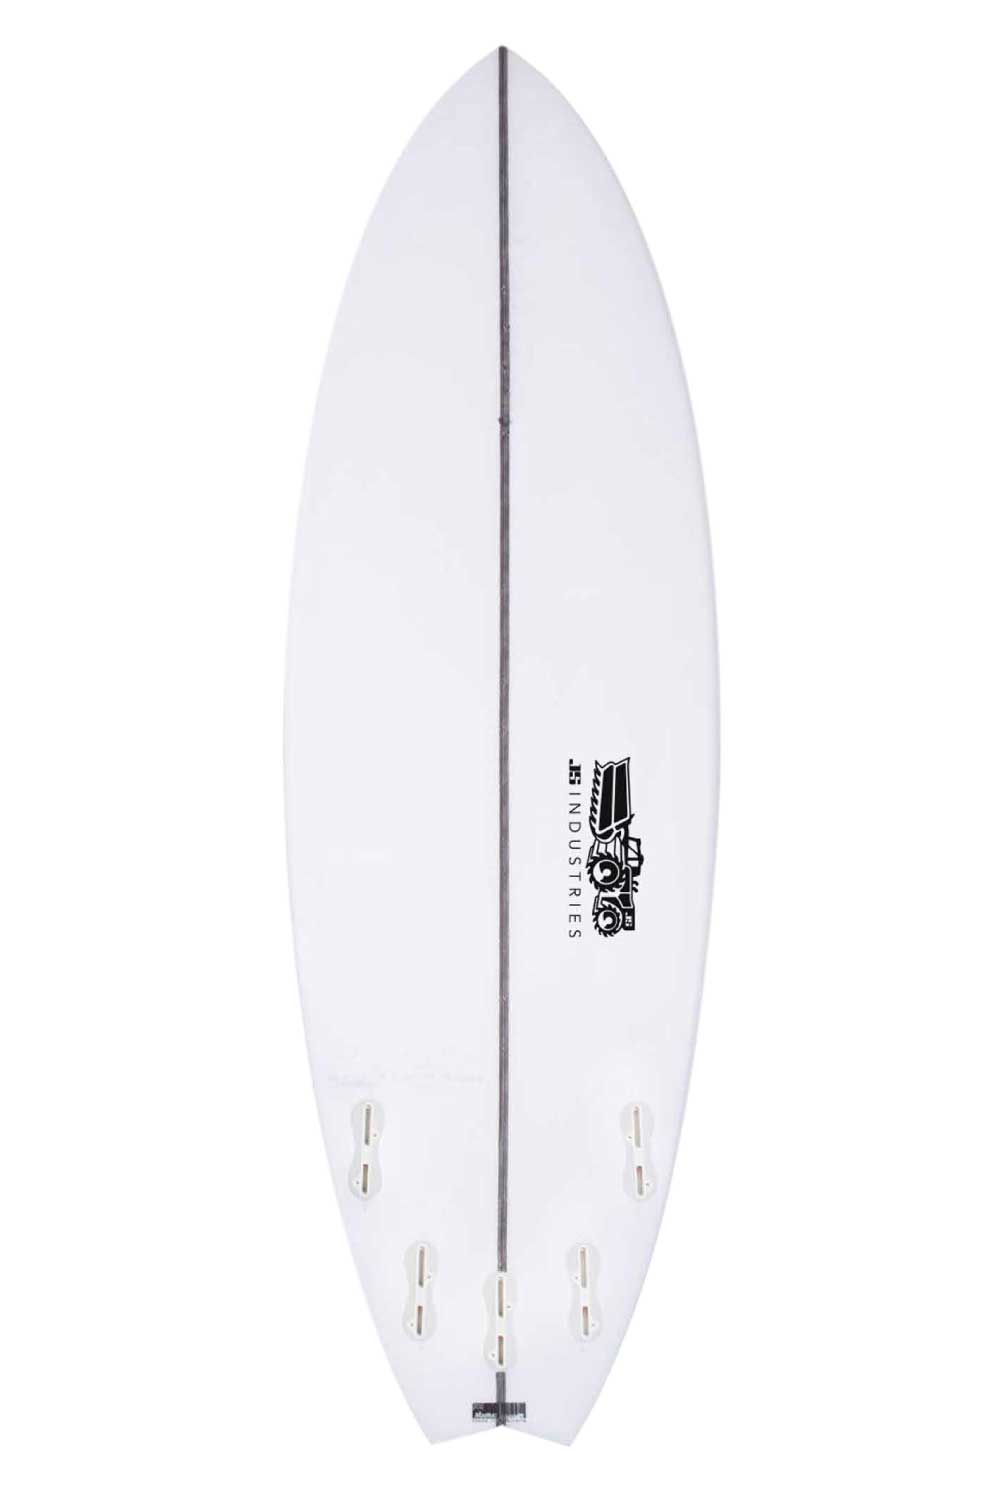 JS Industries SUB XERO PU Swallow Tail Surfboard